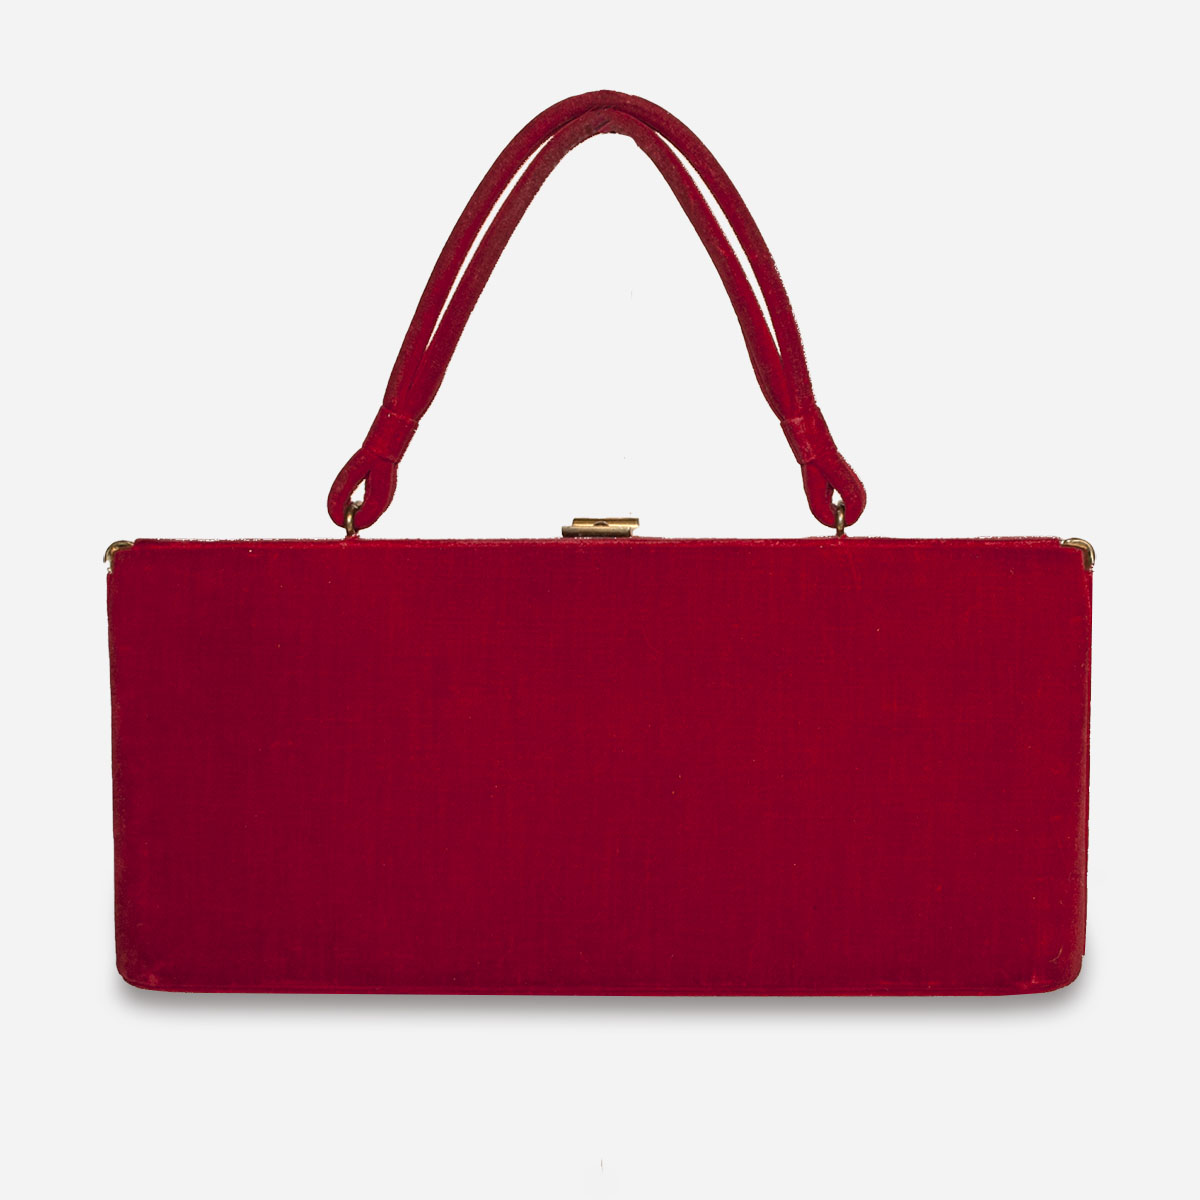 red vintage bag